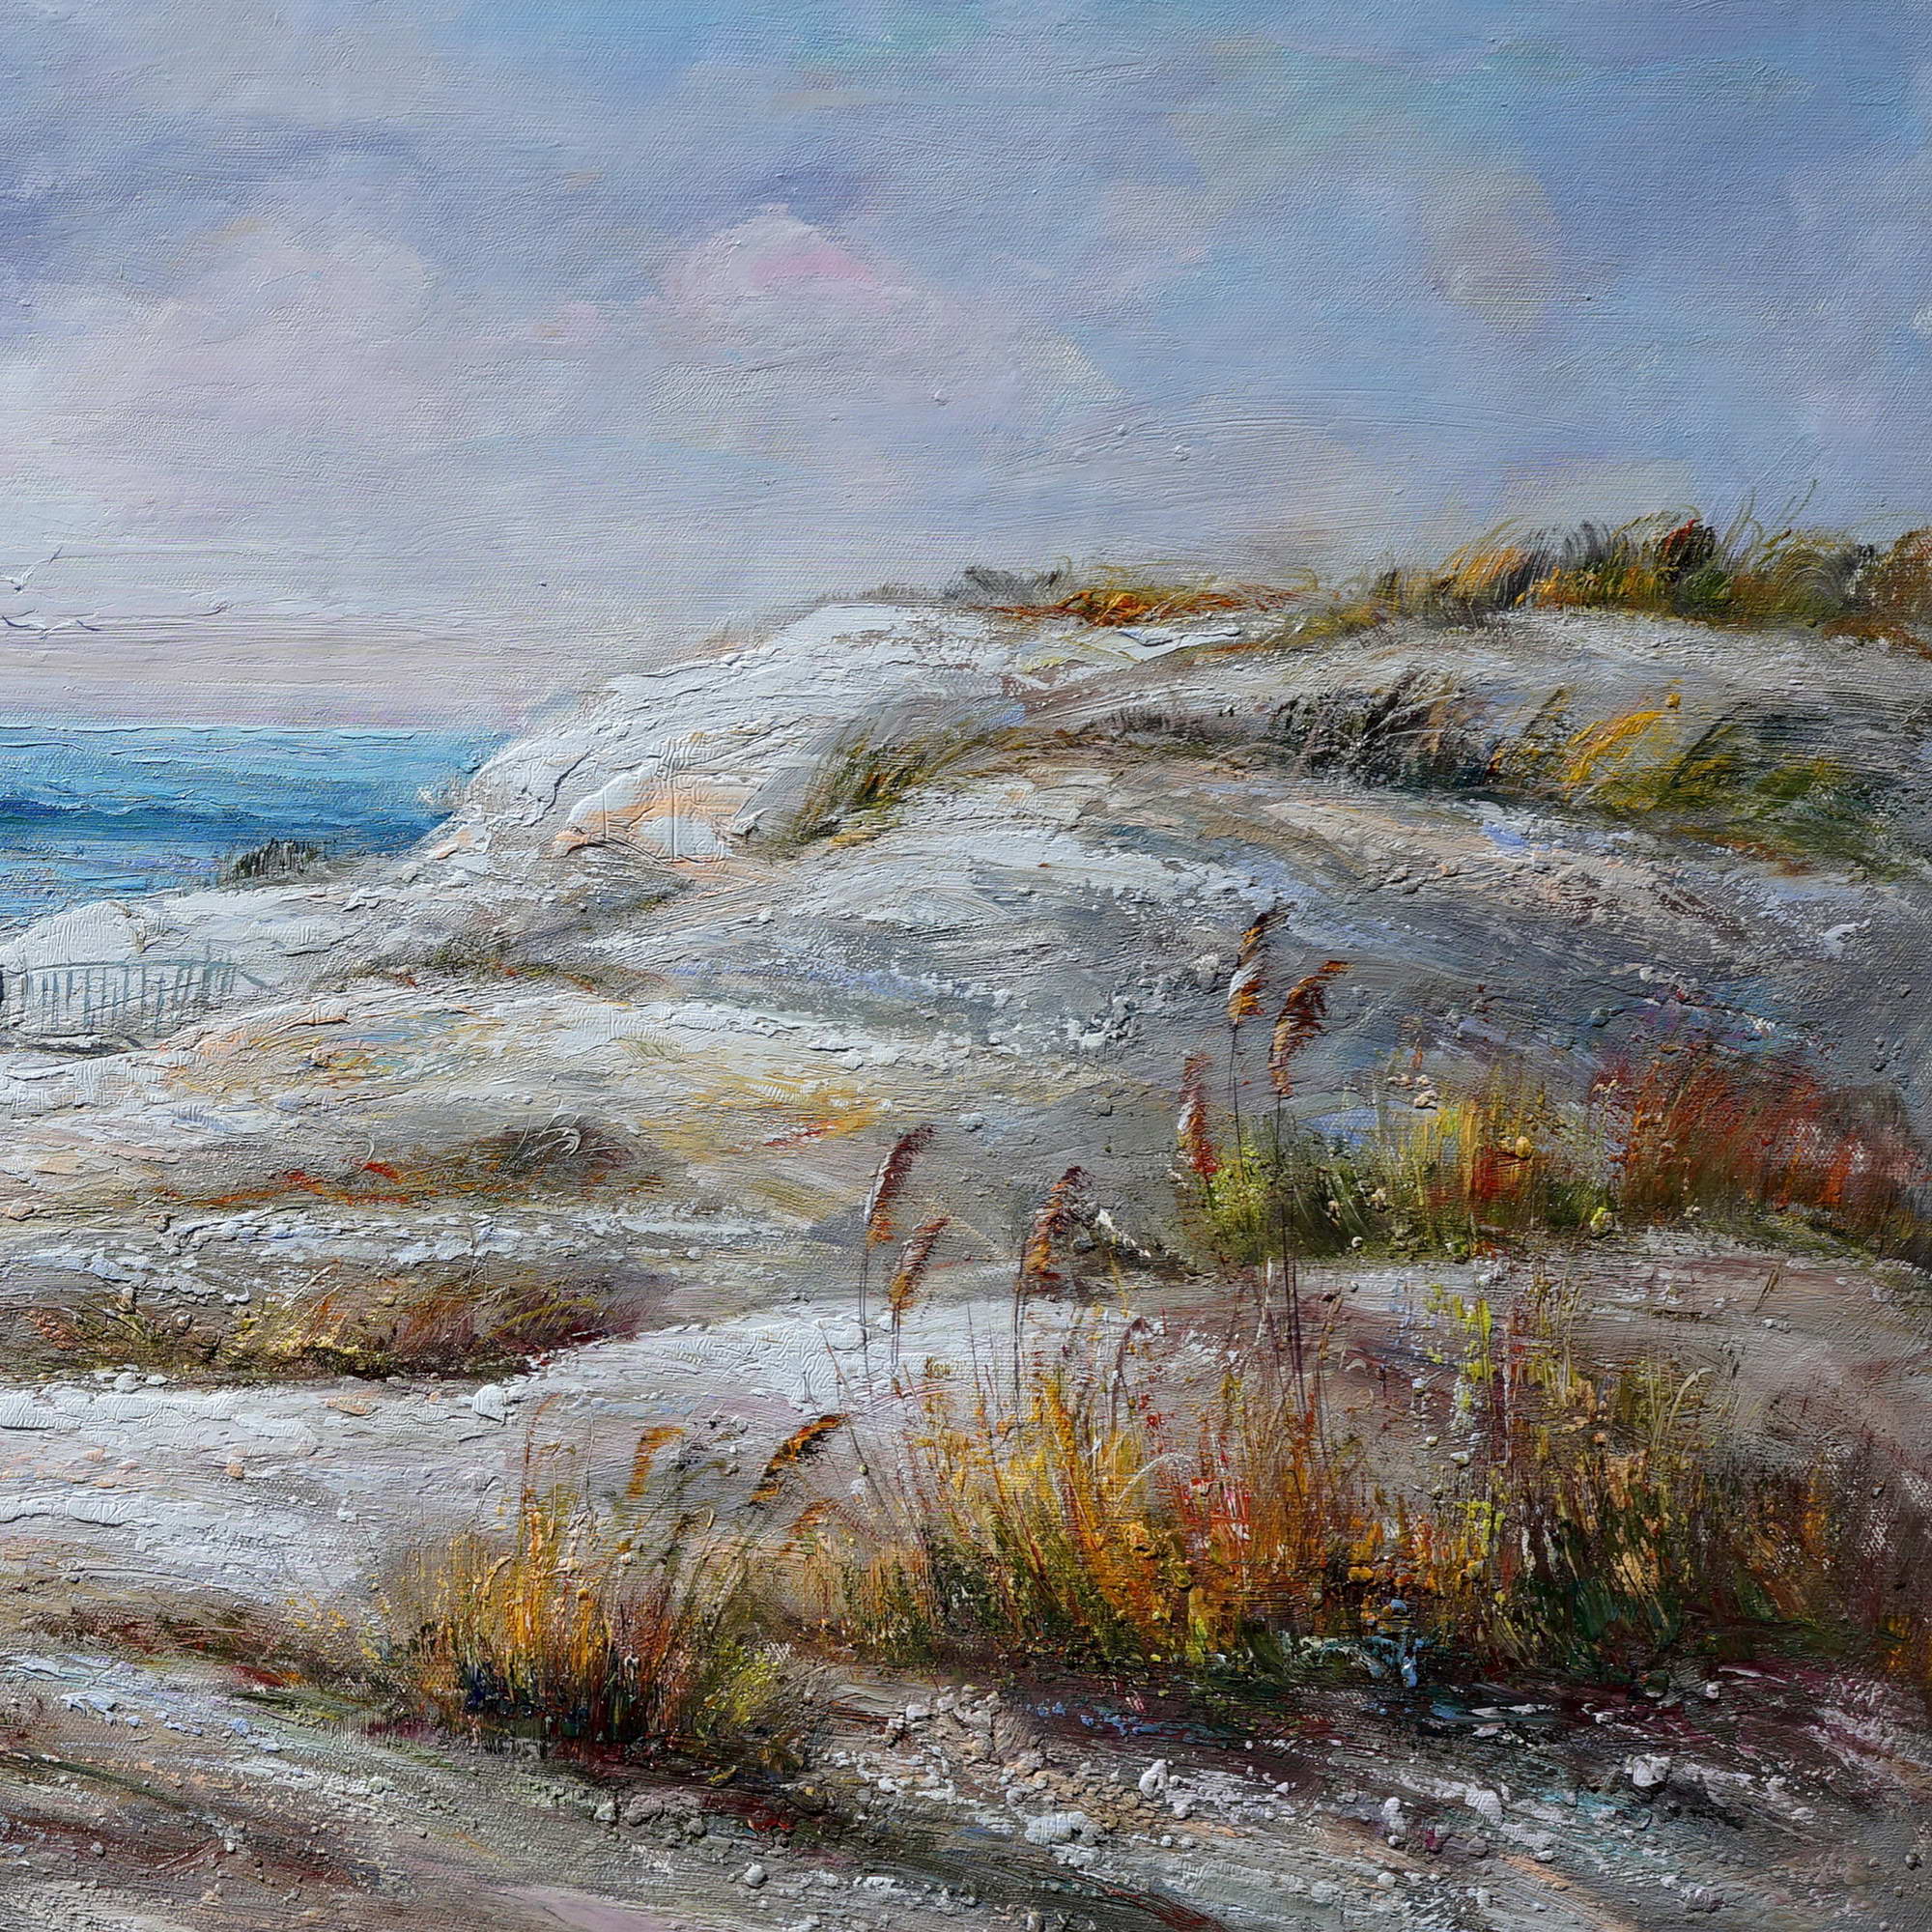 Dipinto a mano Paesaggio di mare Dune di sabbia 75x150cm